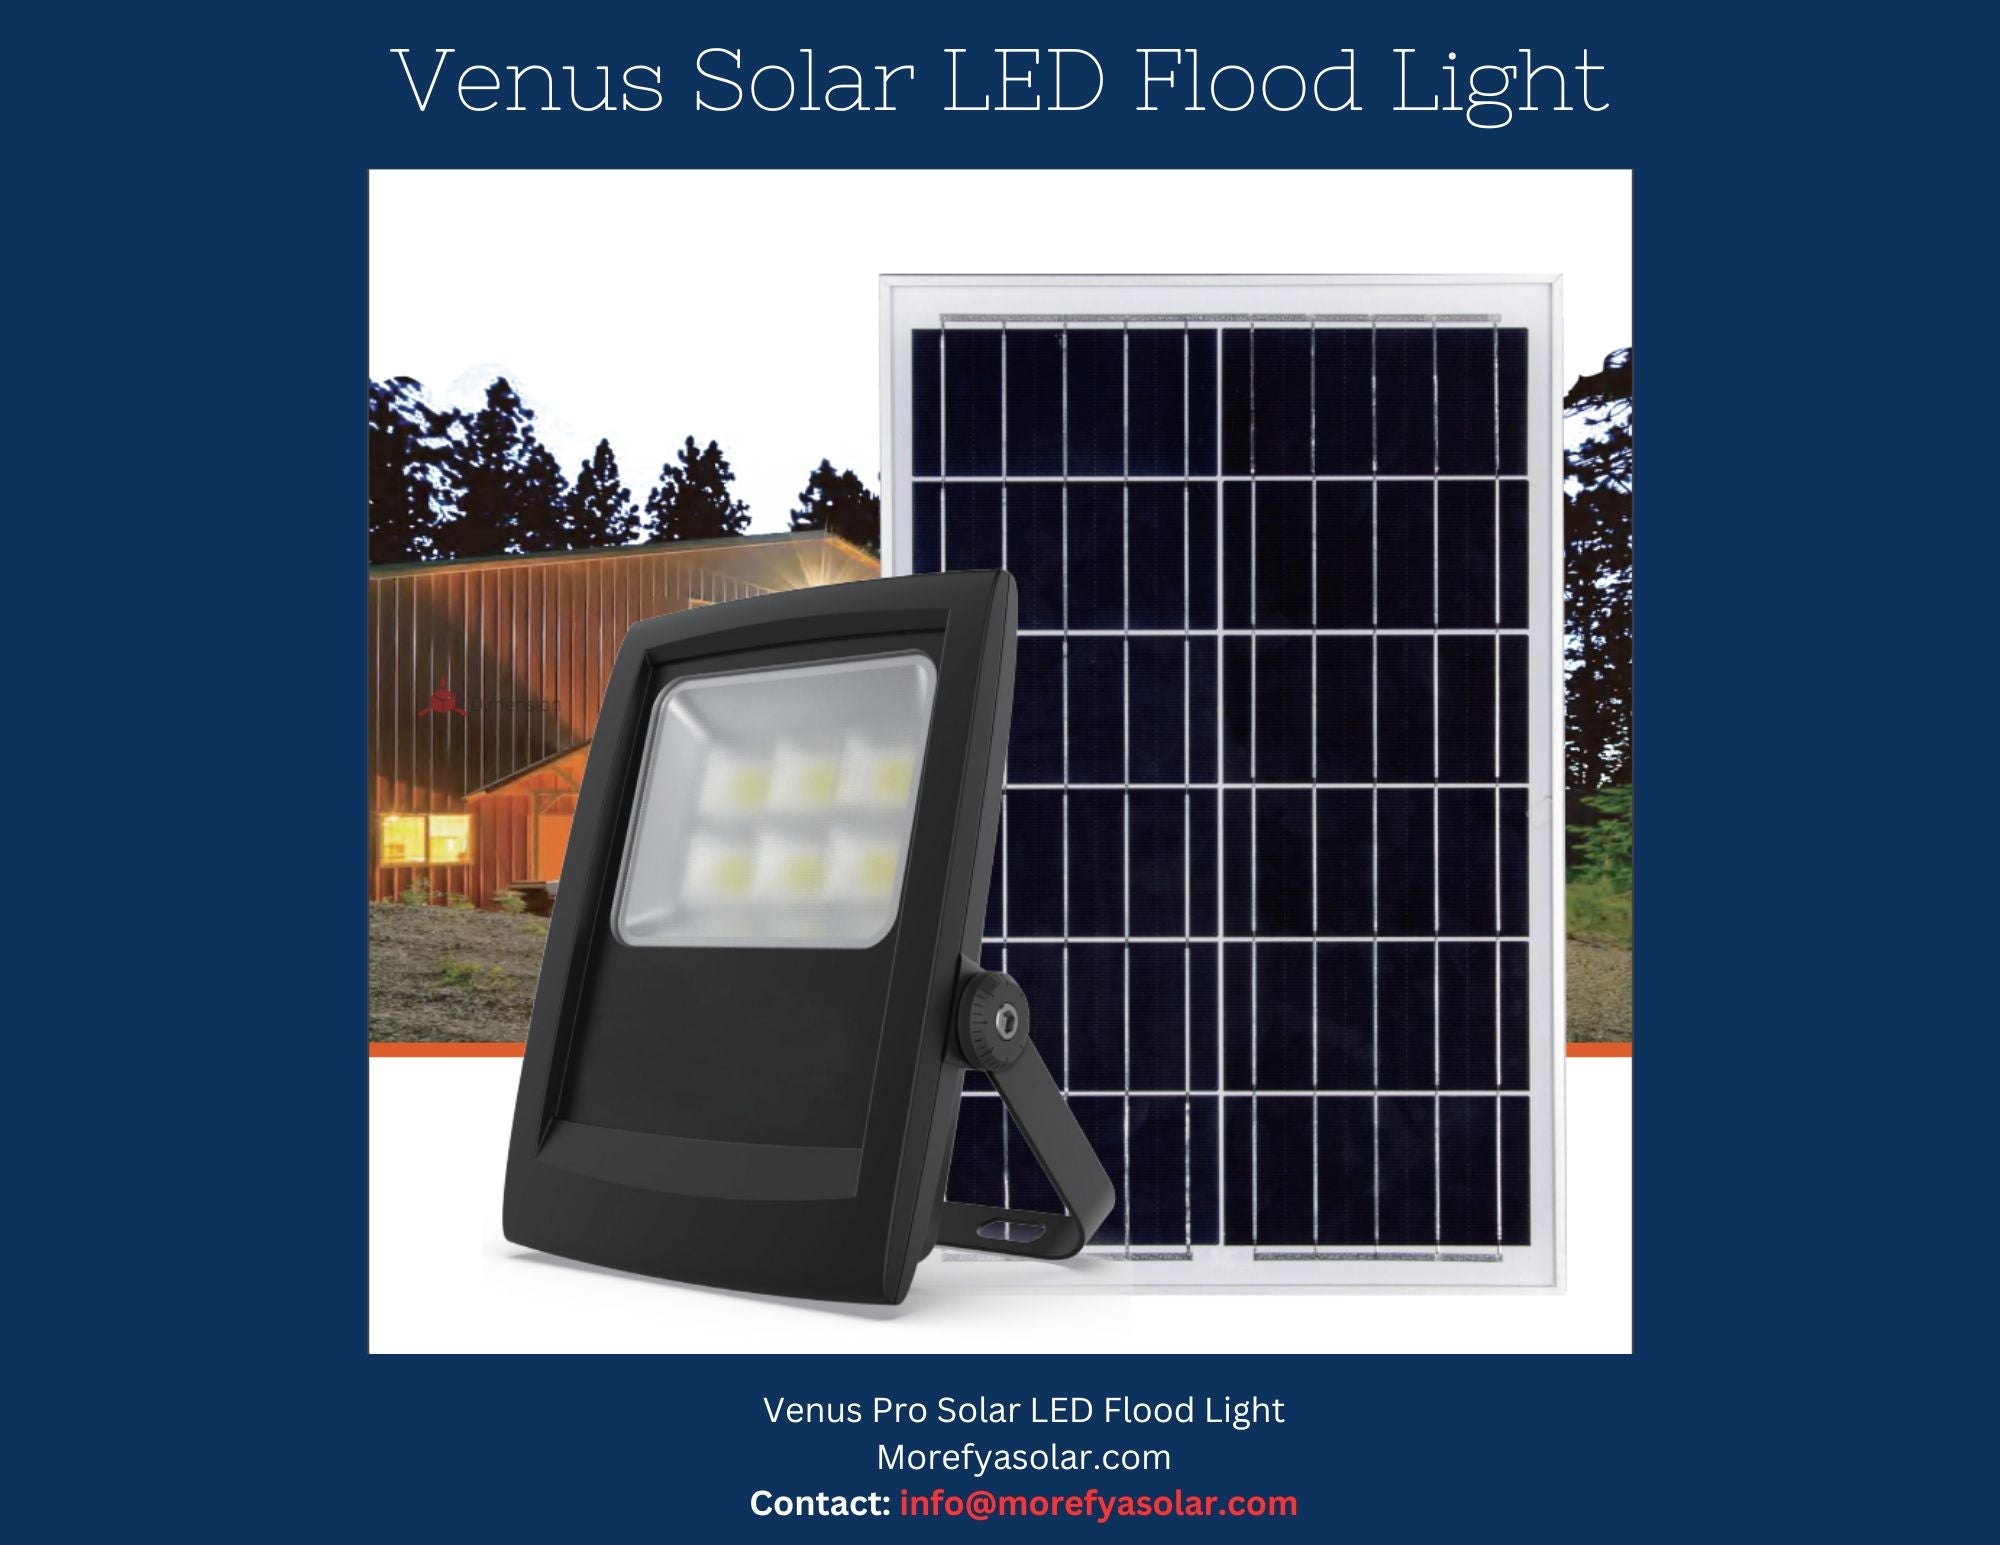 Venus V4 Pro Solar LED Flood Light